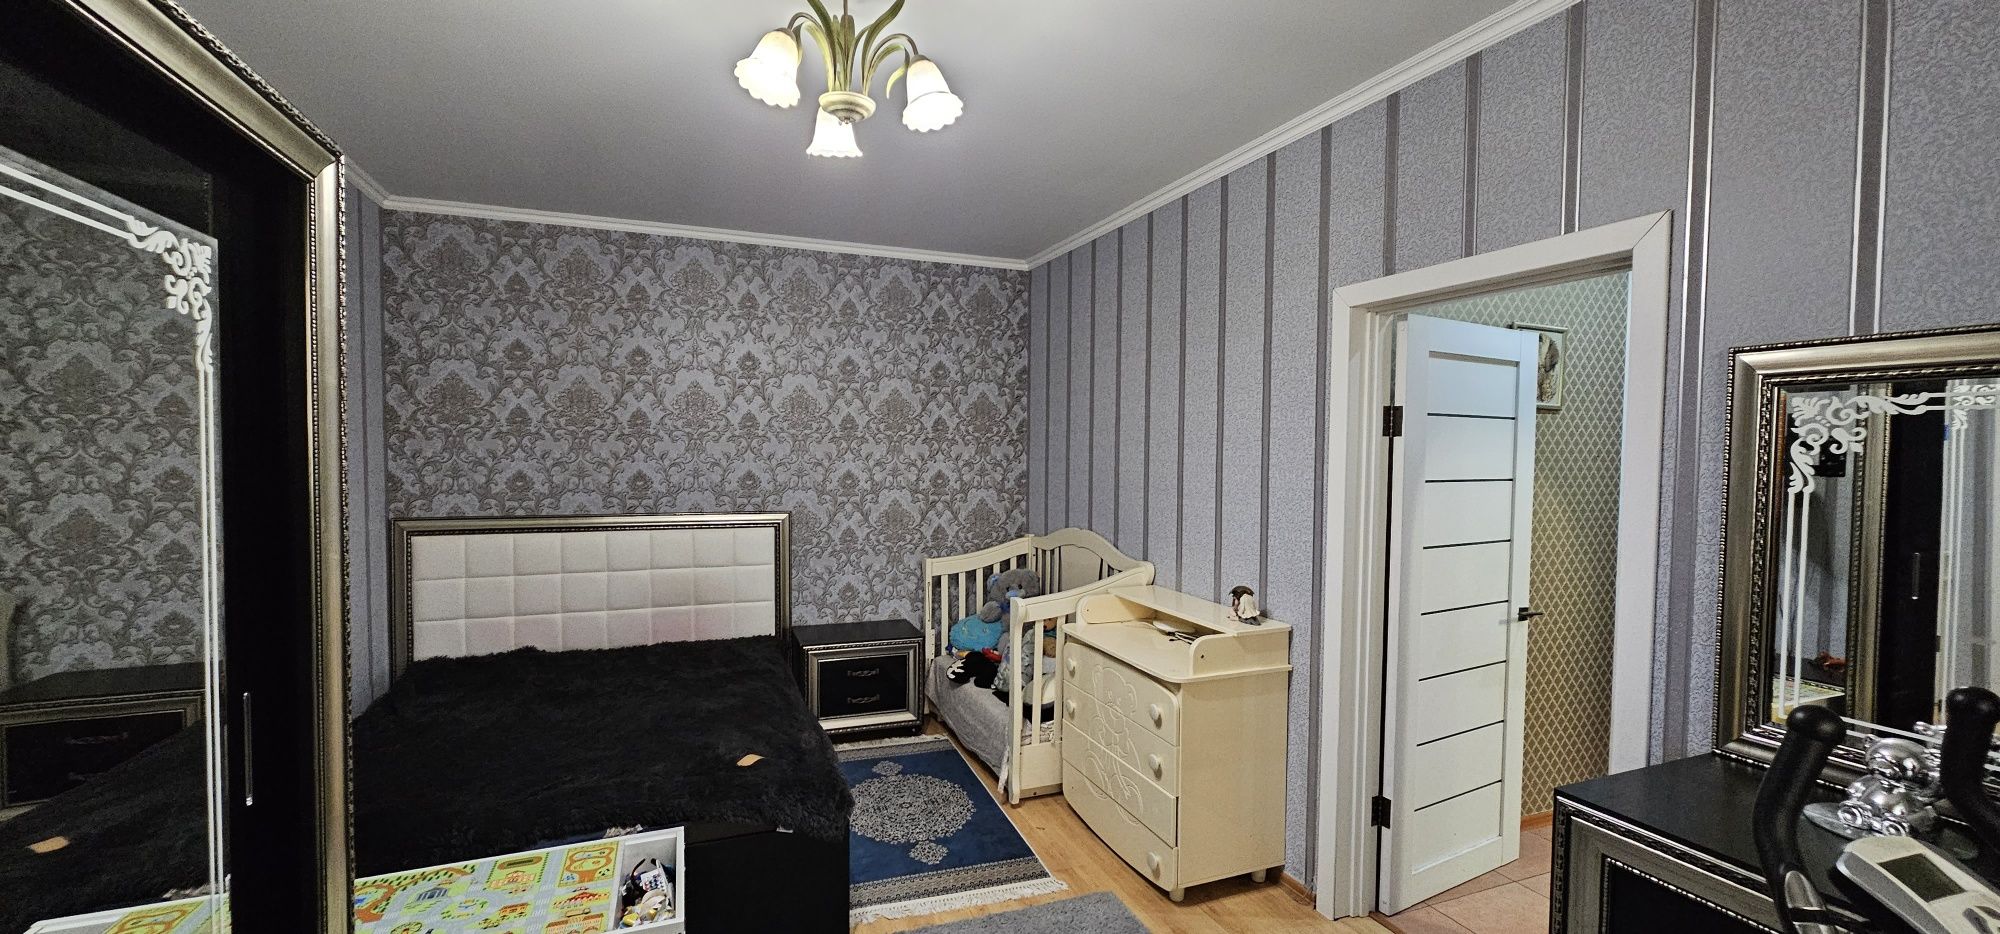 СРОЧНО продам однокомнатную квартиру  в пригороде Черноморска.